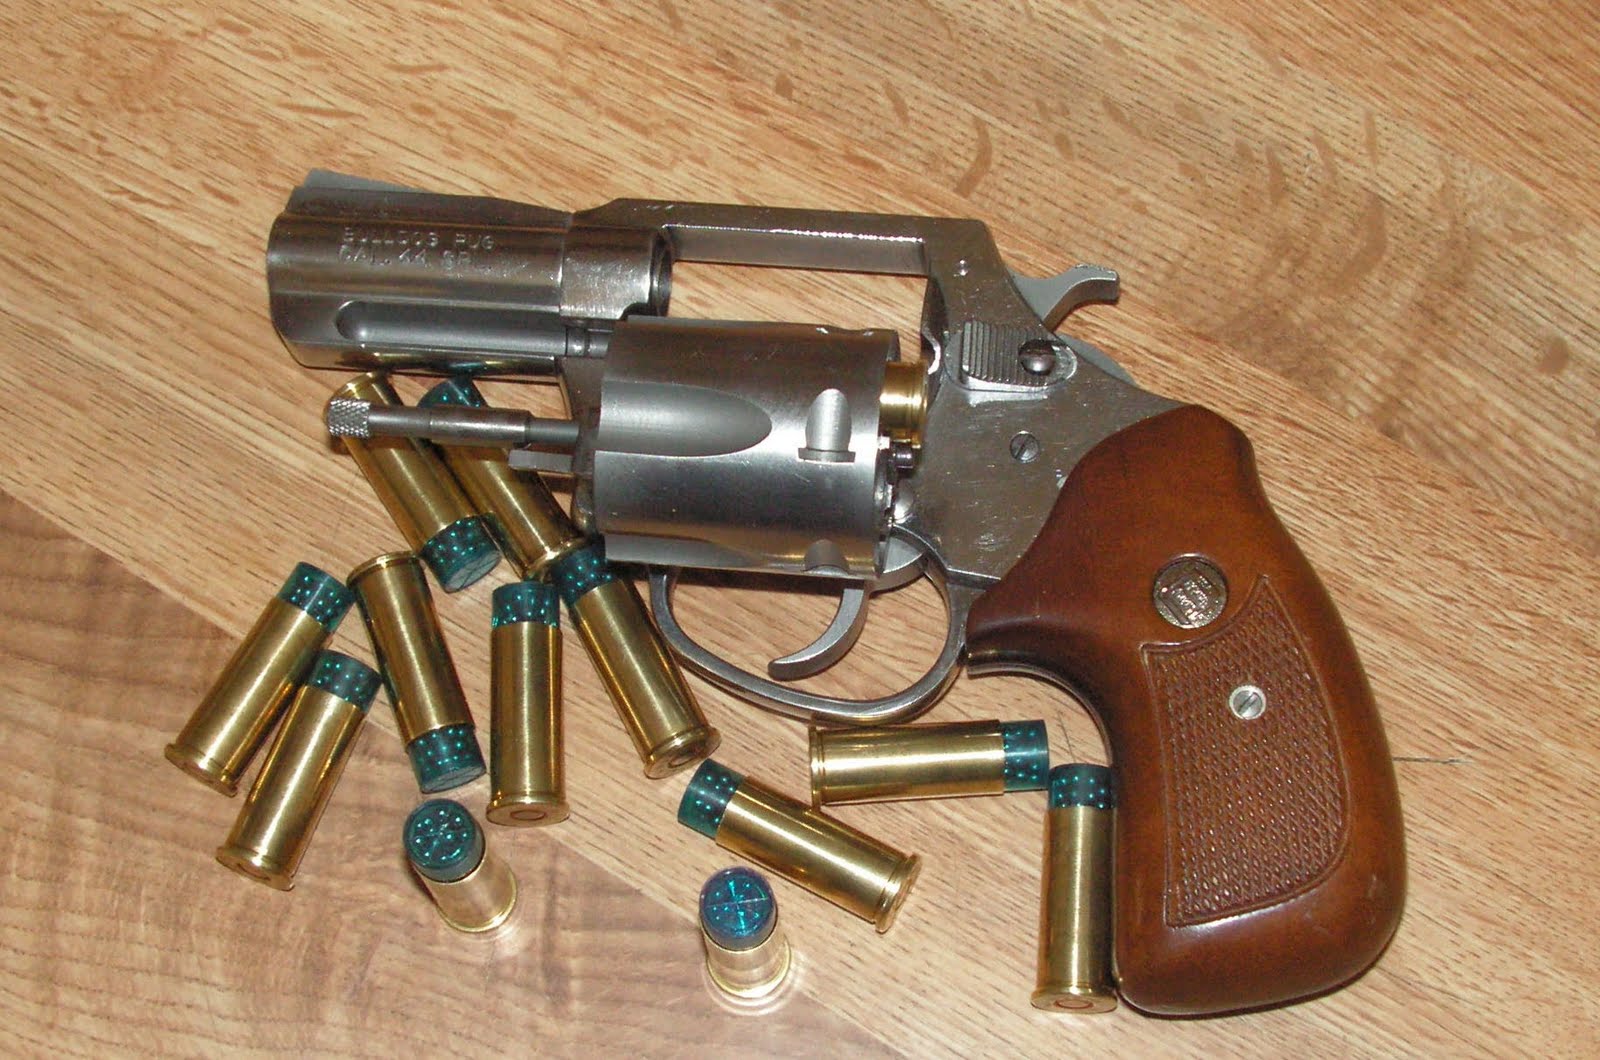 Bob Shell's Blog: The 45-120 Rifle